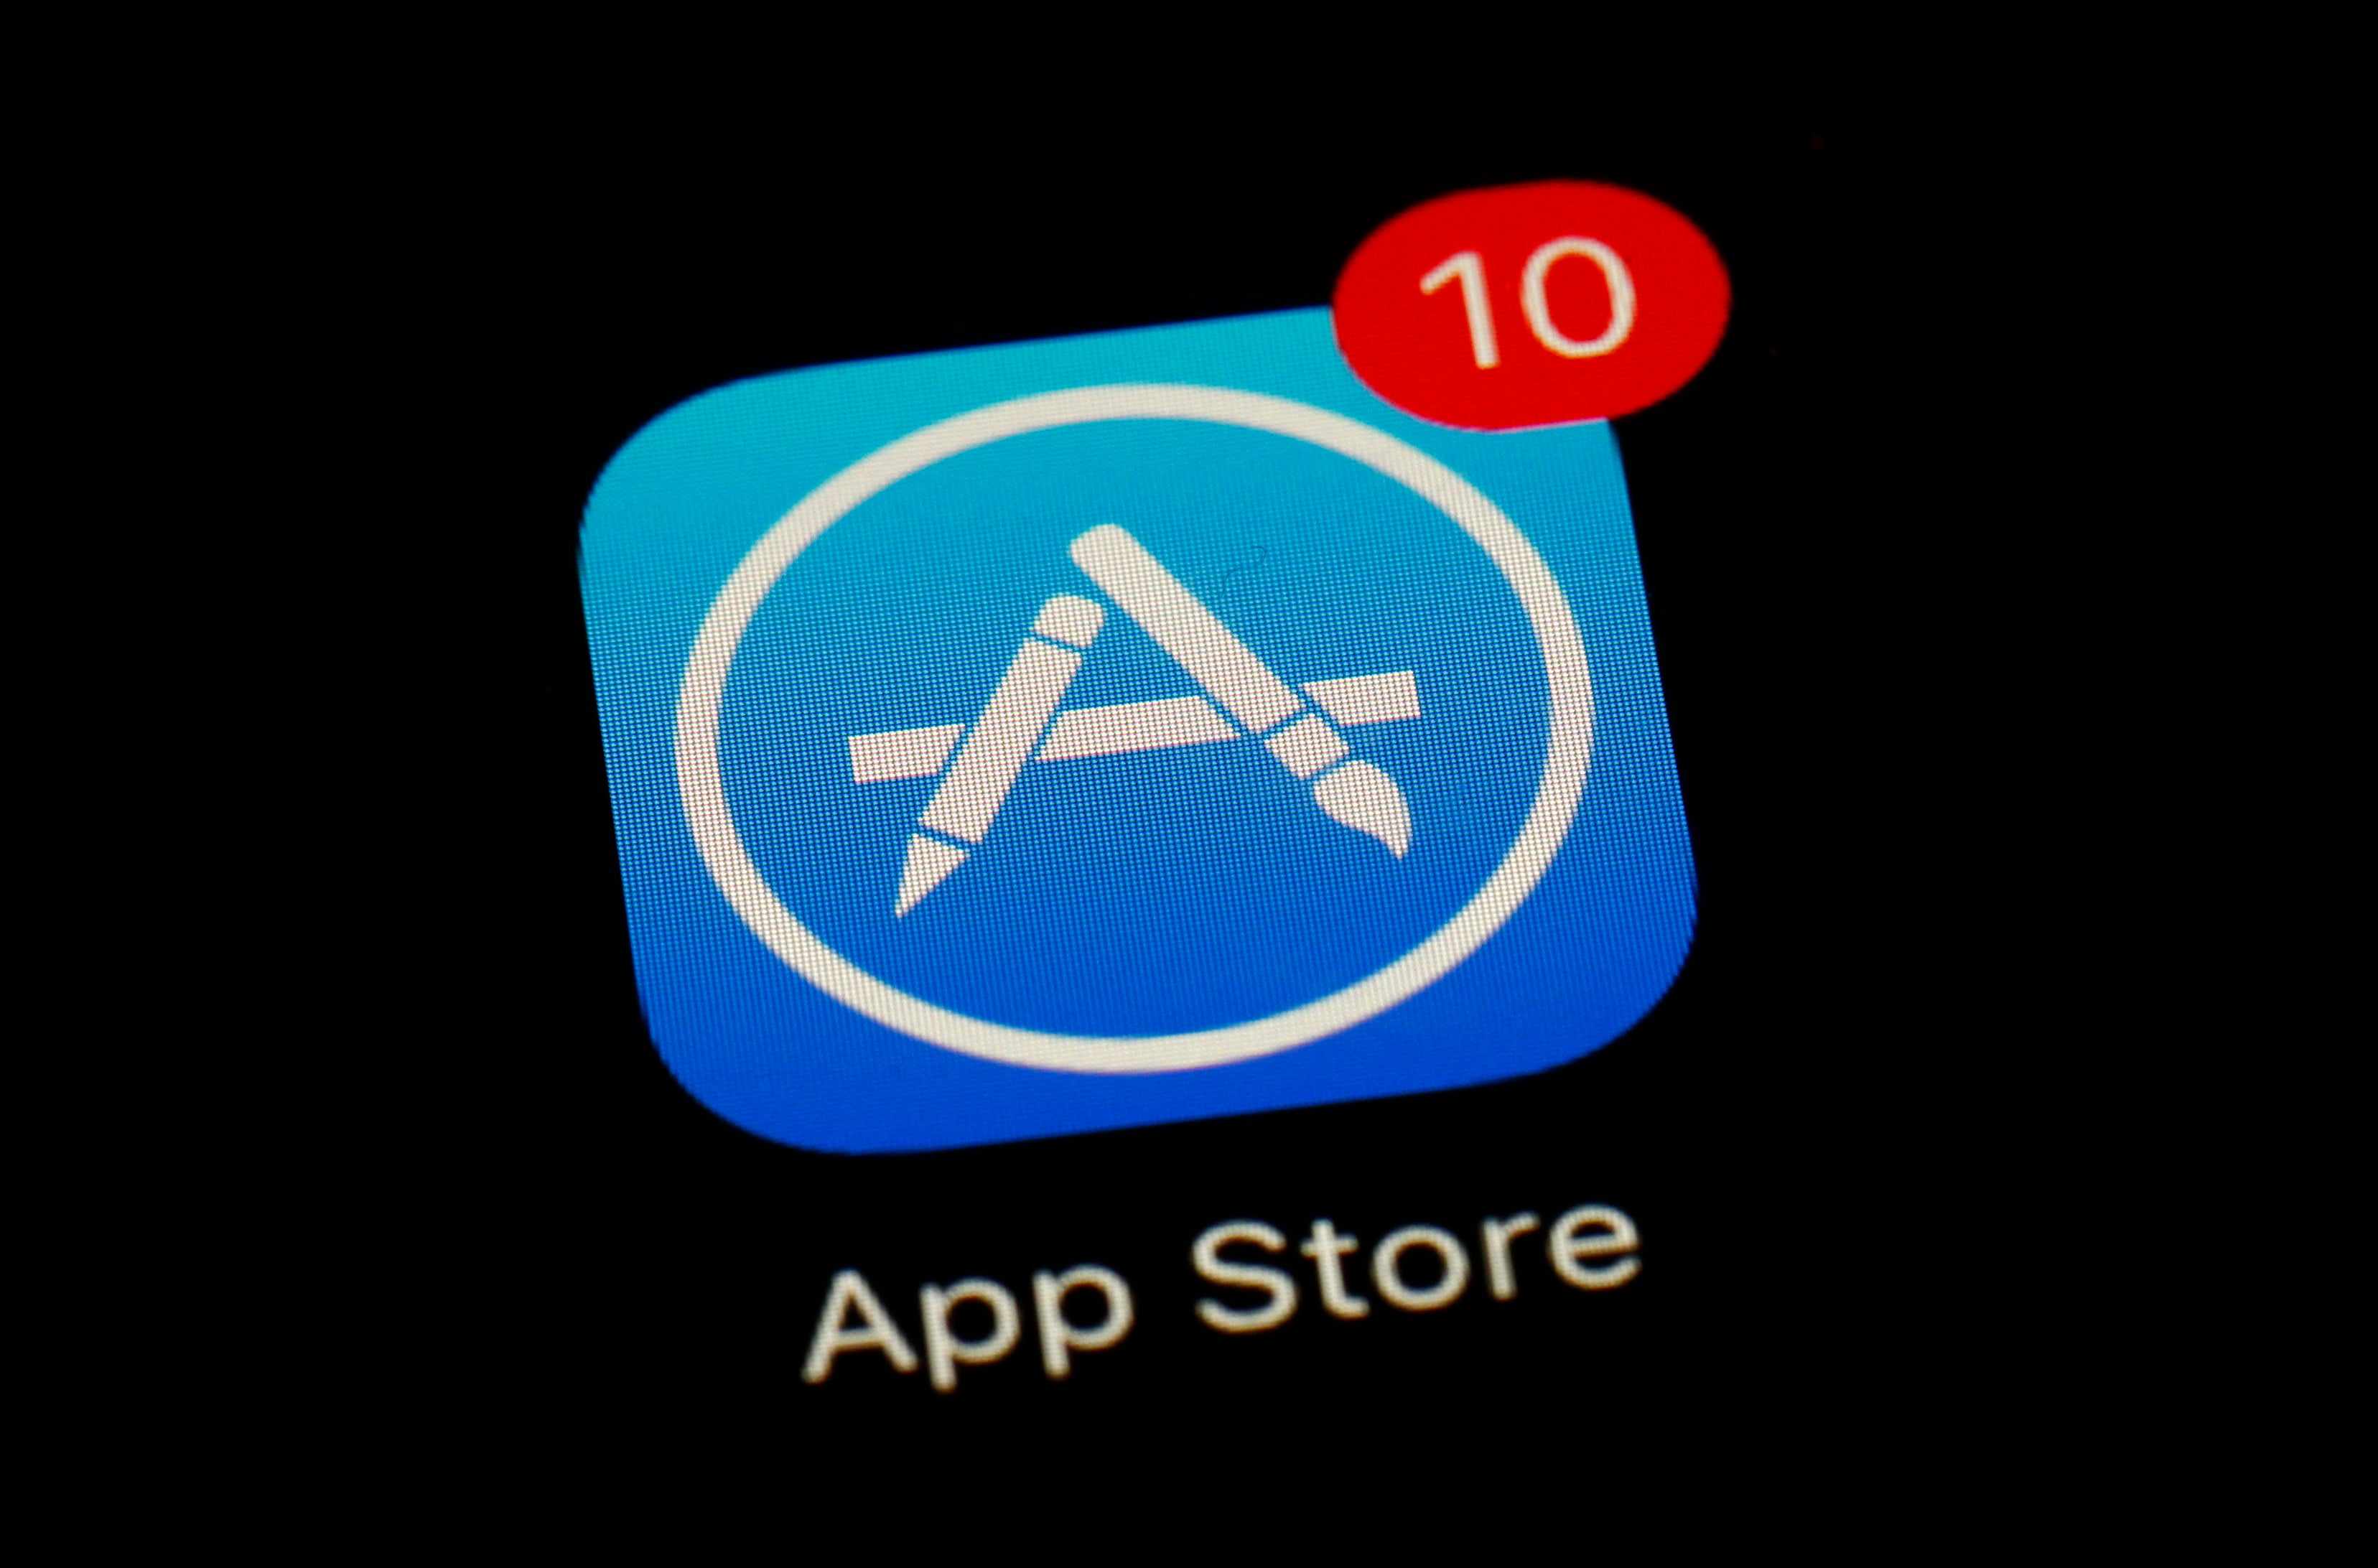 Apple asegura que la actualización es un compromiso adquirido anteriormente en favor de la privacidad de los usuarios